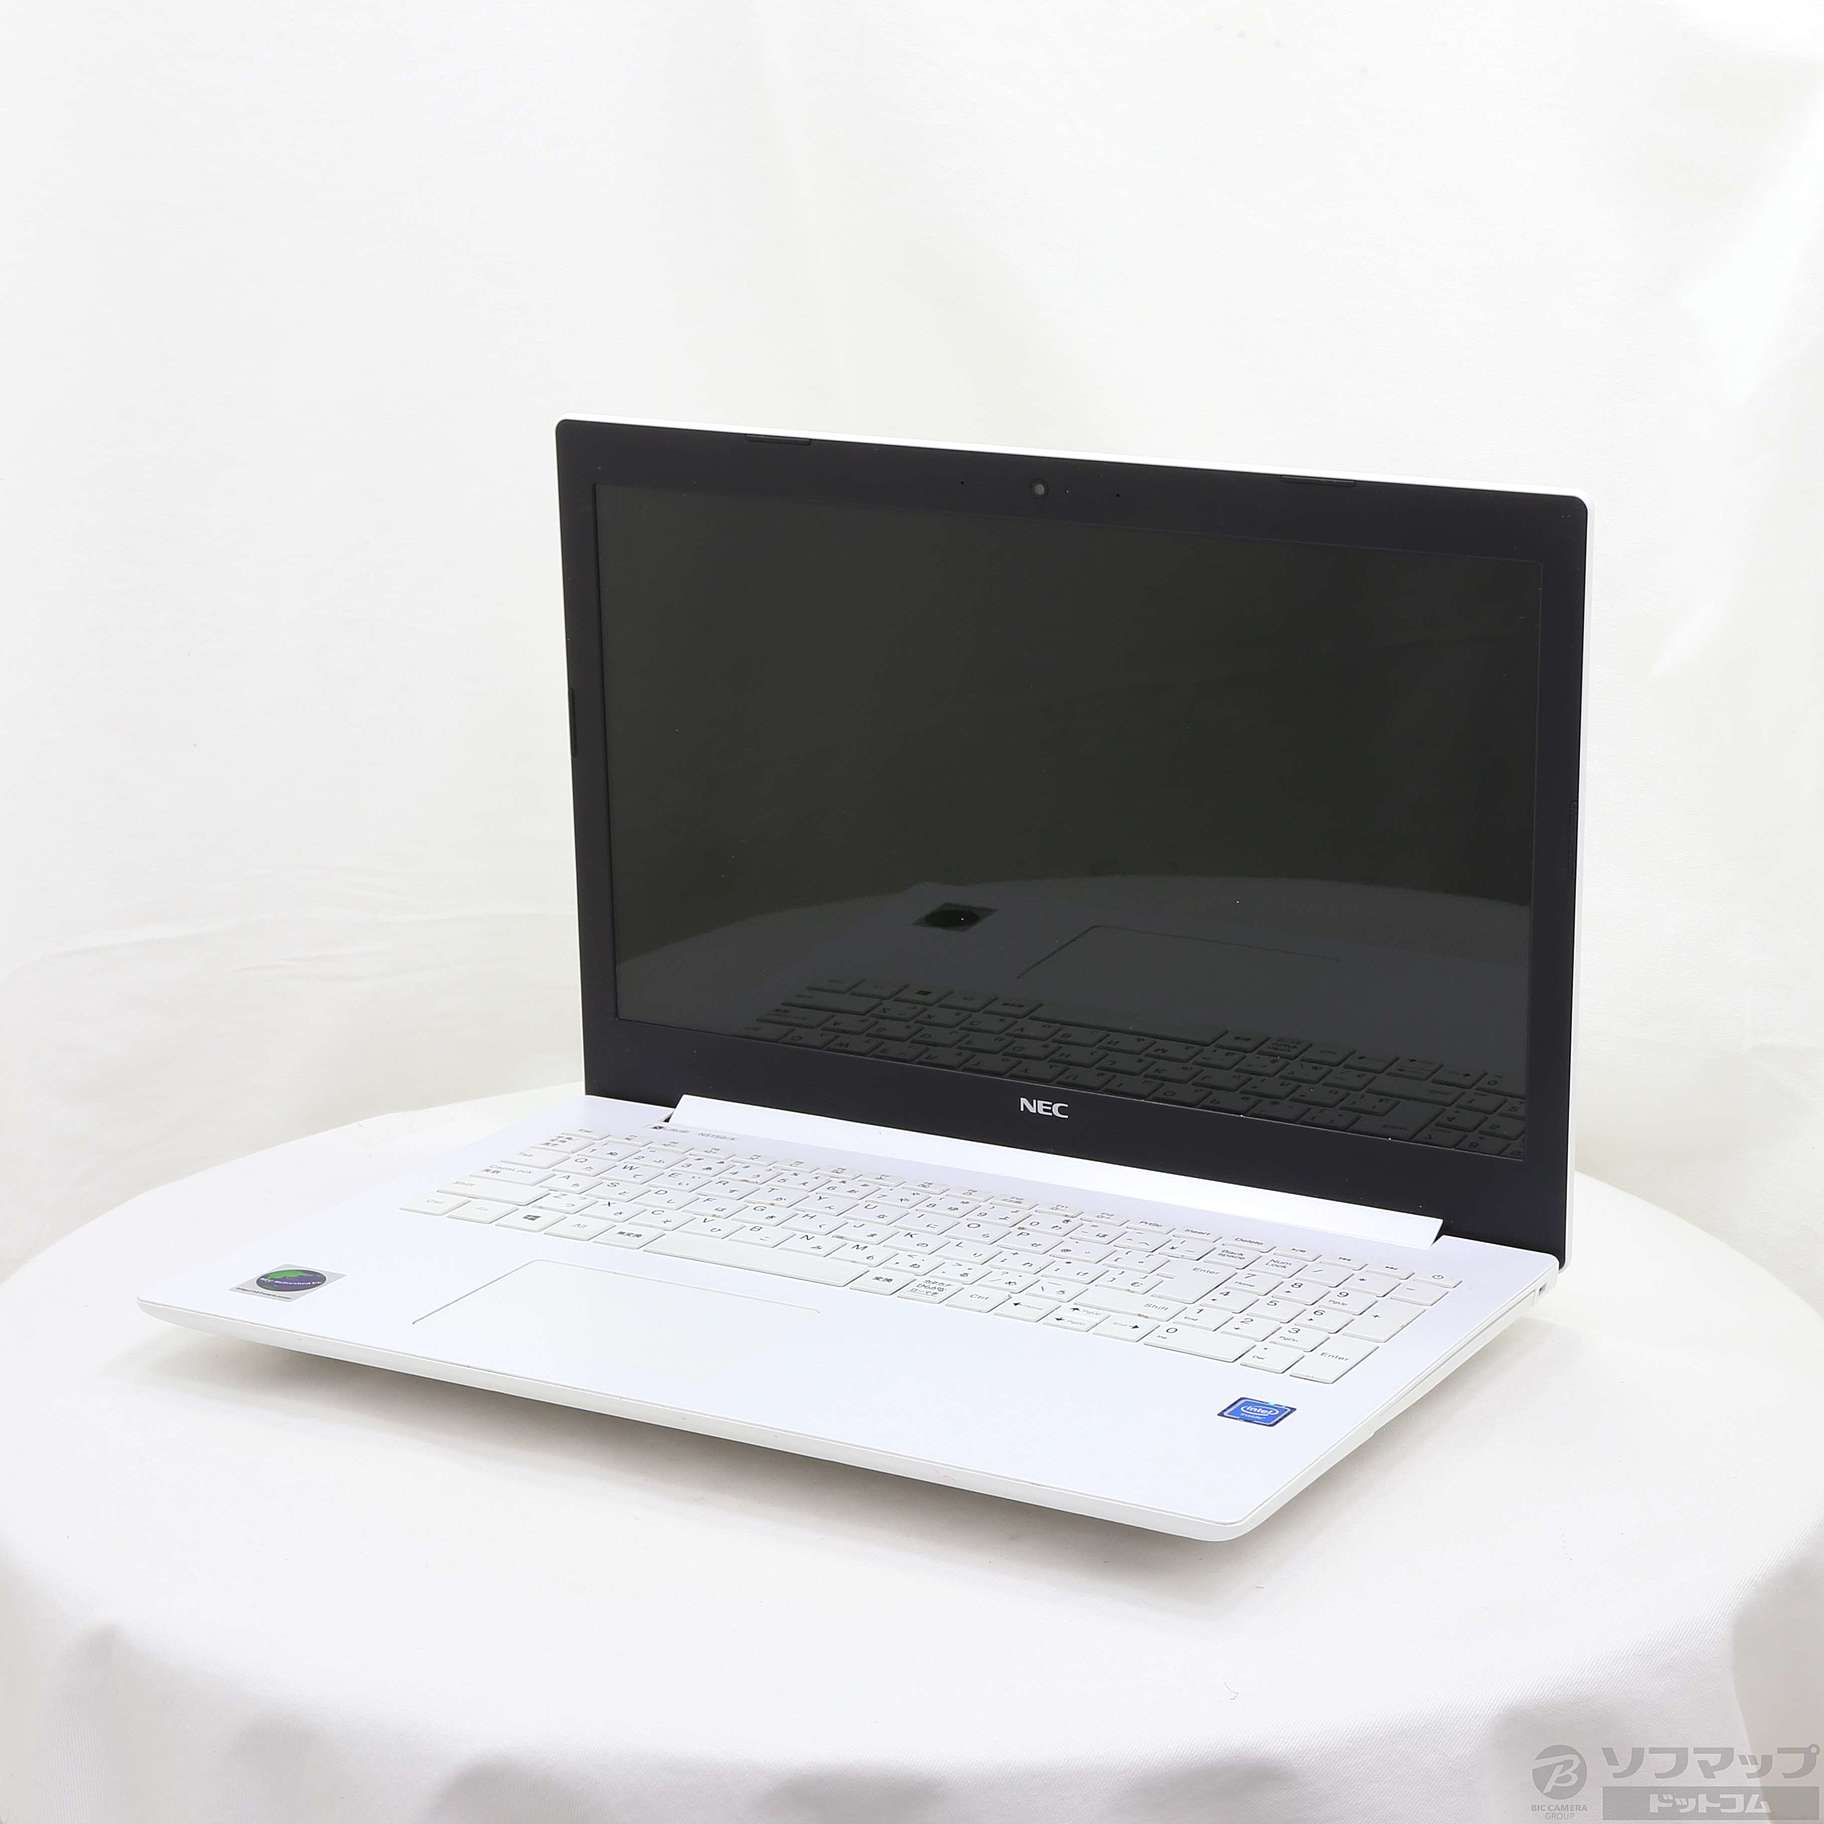 【中古】セール対象品 LaVie Note Standard PC-NS150KAW カームホワイト 〔NEC Refreshed PC